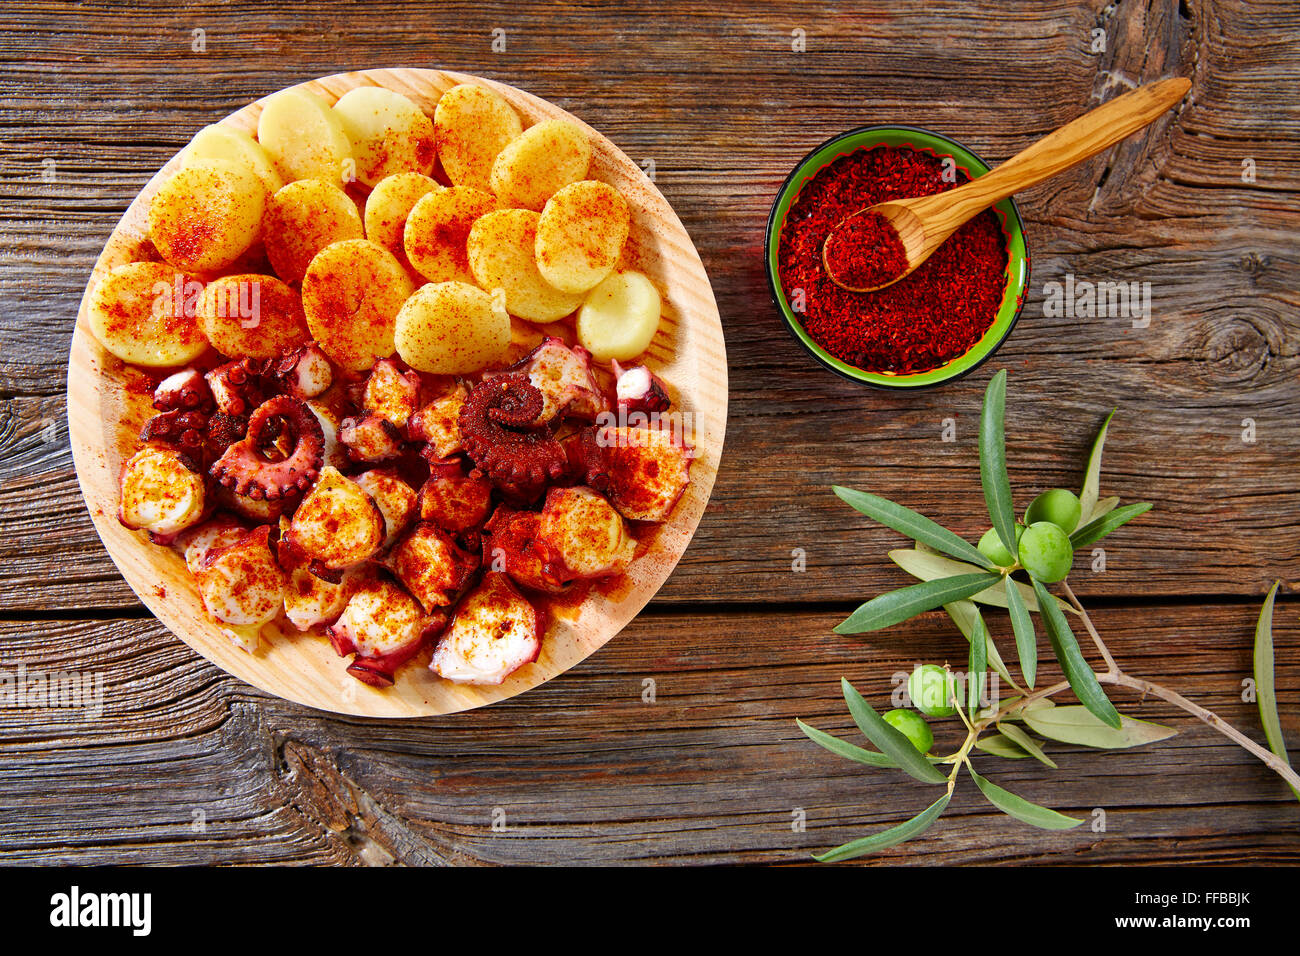 Pulpo a Feira tapas avec octopus pommes gallega style et paprika recette d'Espagne Banque D'Images